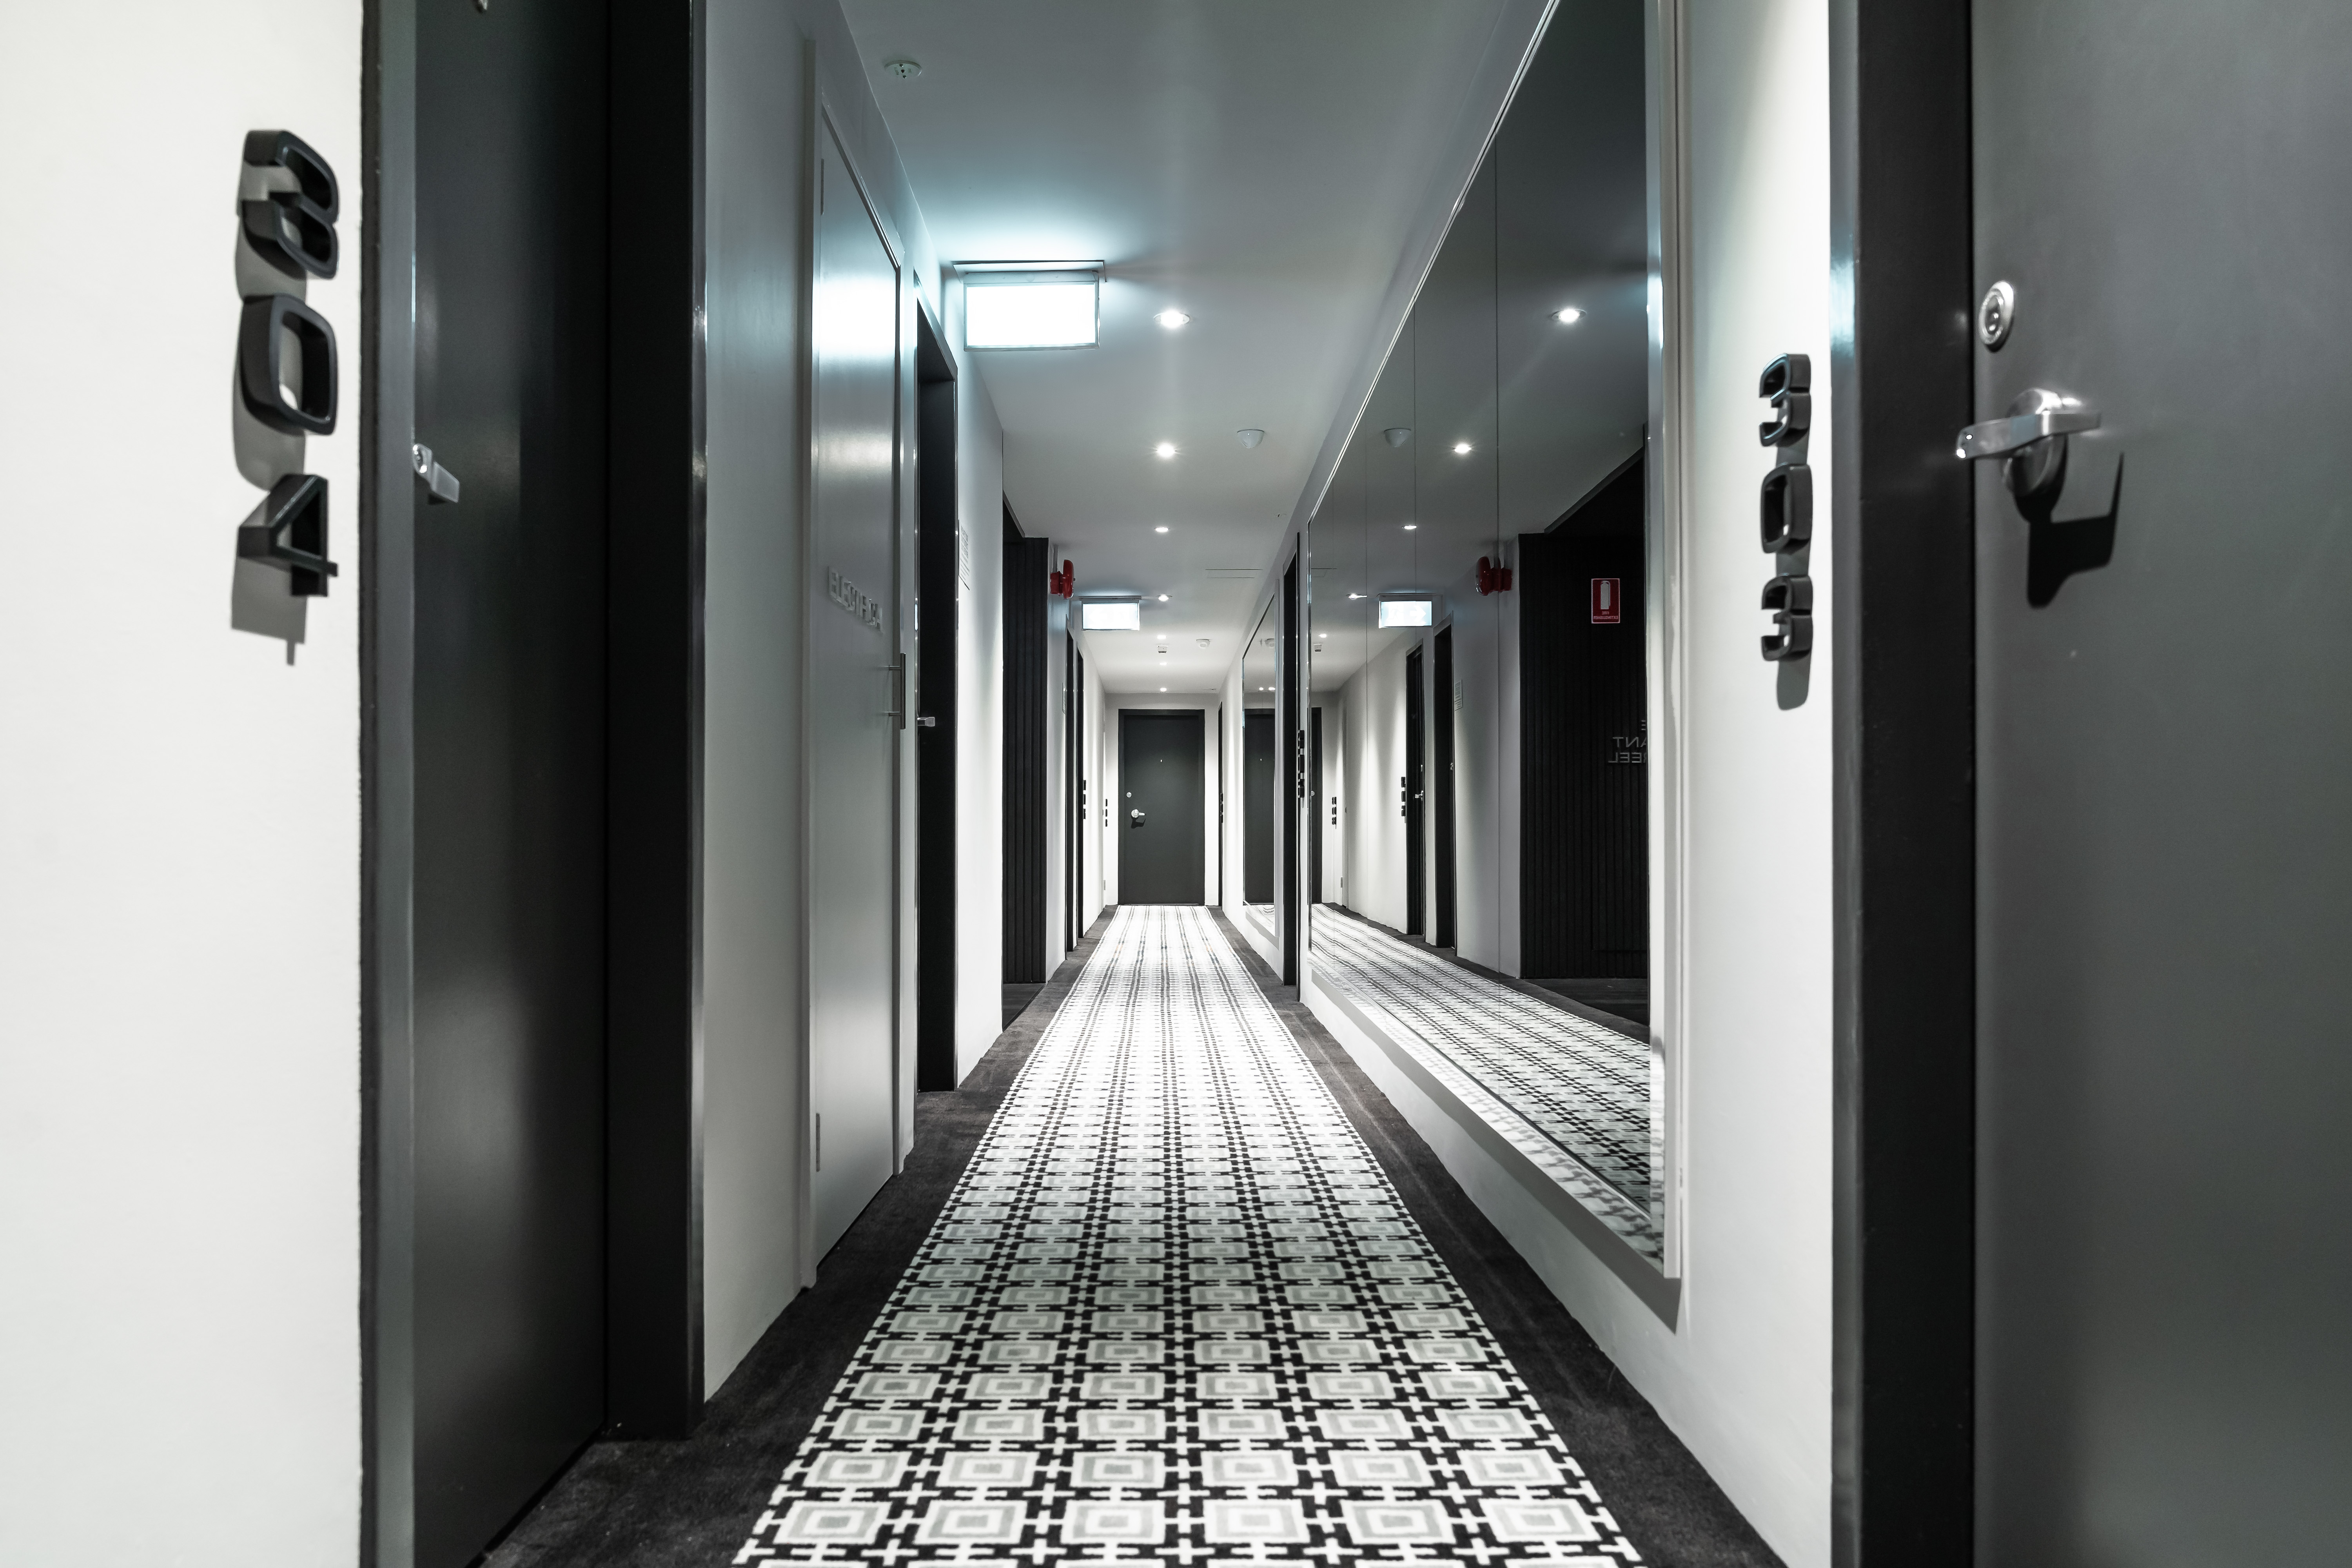 Sydney apartment building interior designer hallways common areas